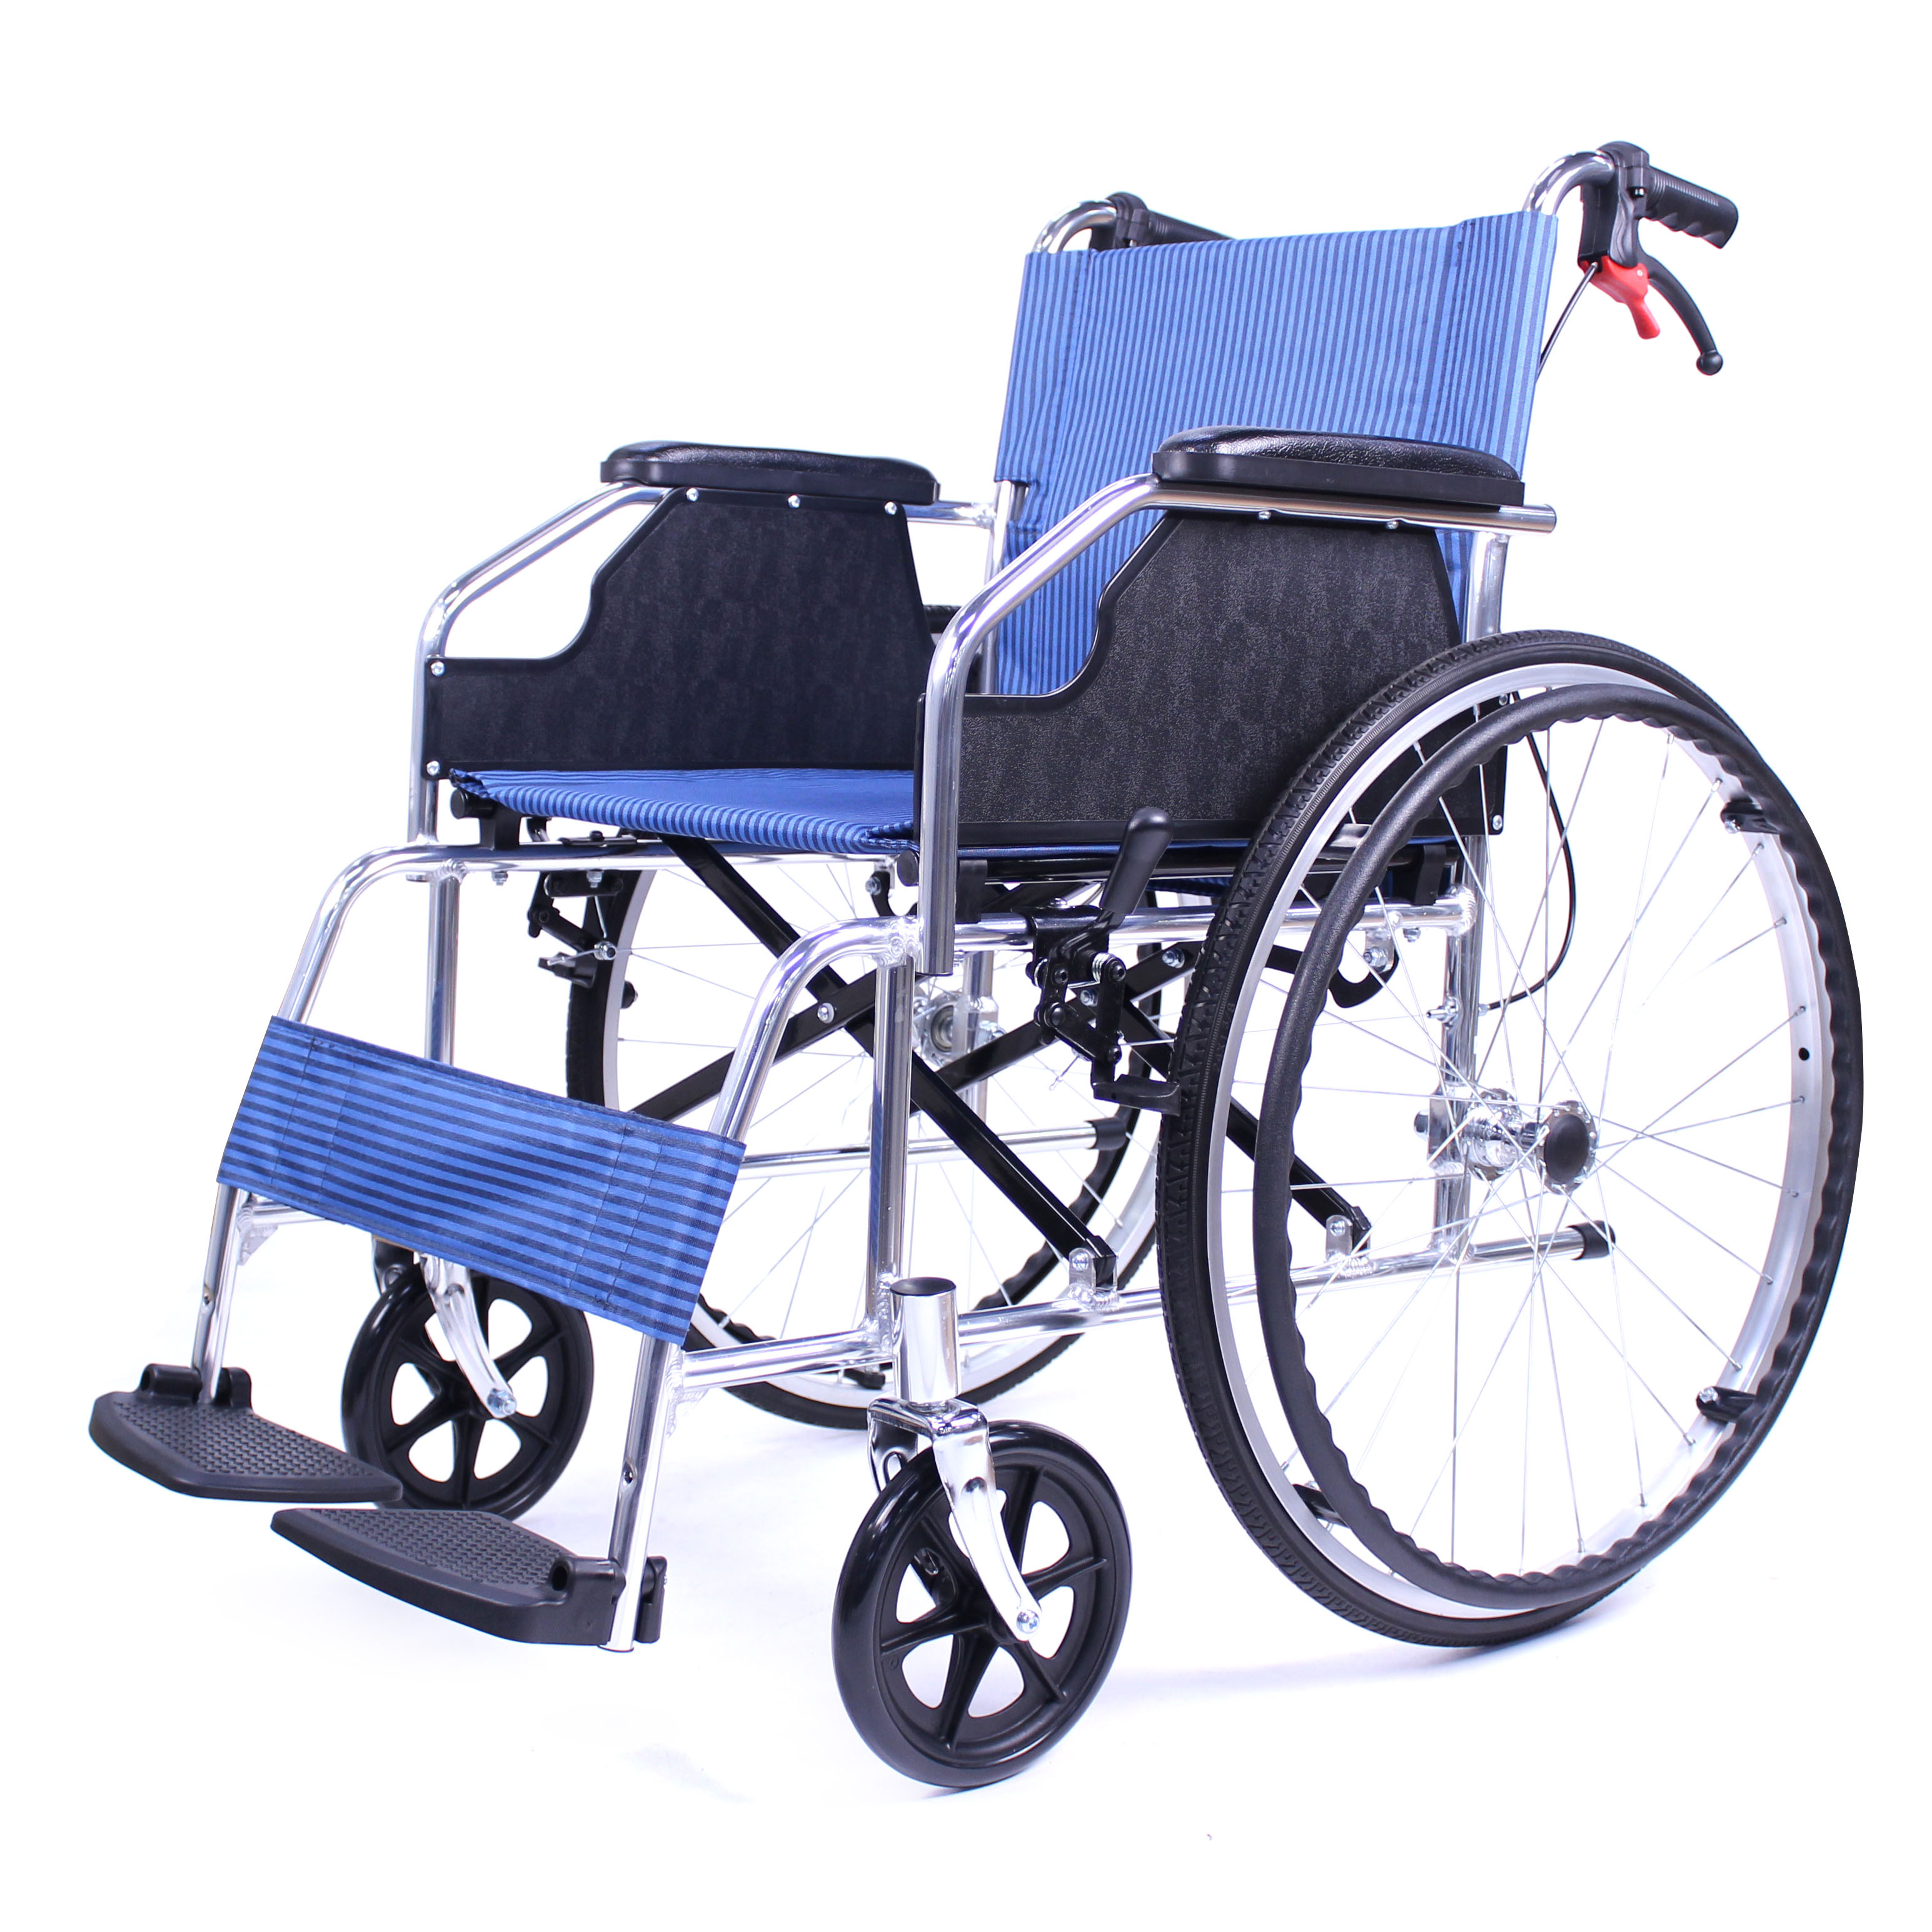 الصين مصنع الصانع نوعية جيدة كرسي متحرك قابل للطي سبائك الألومنيوم كرسي متحرك